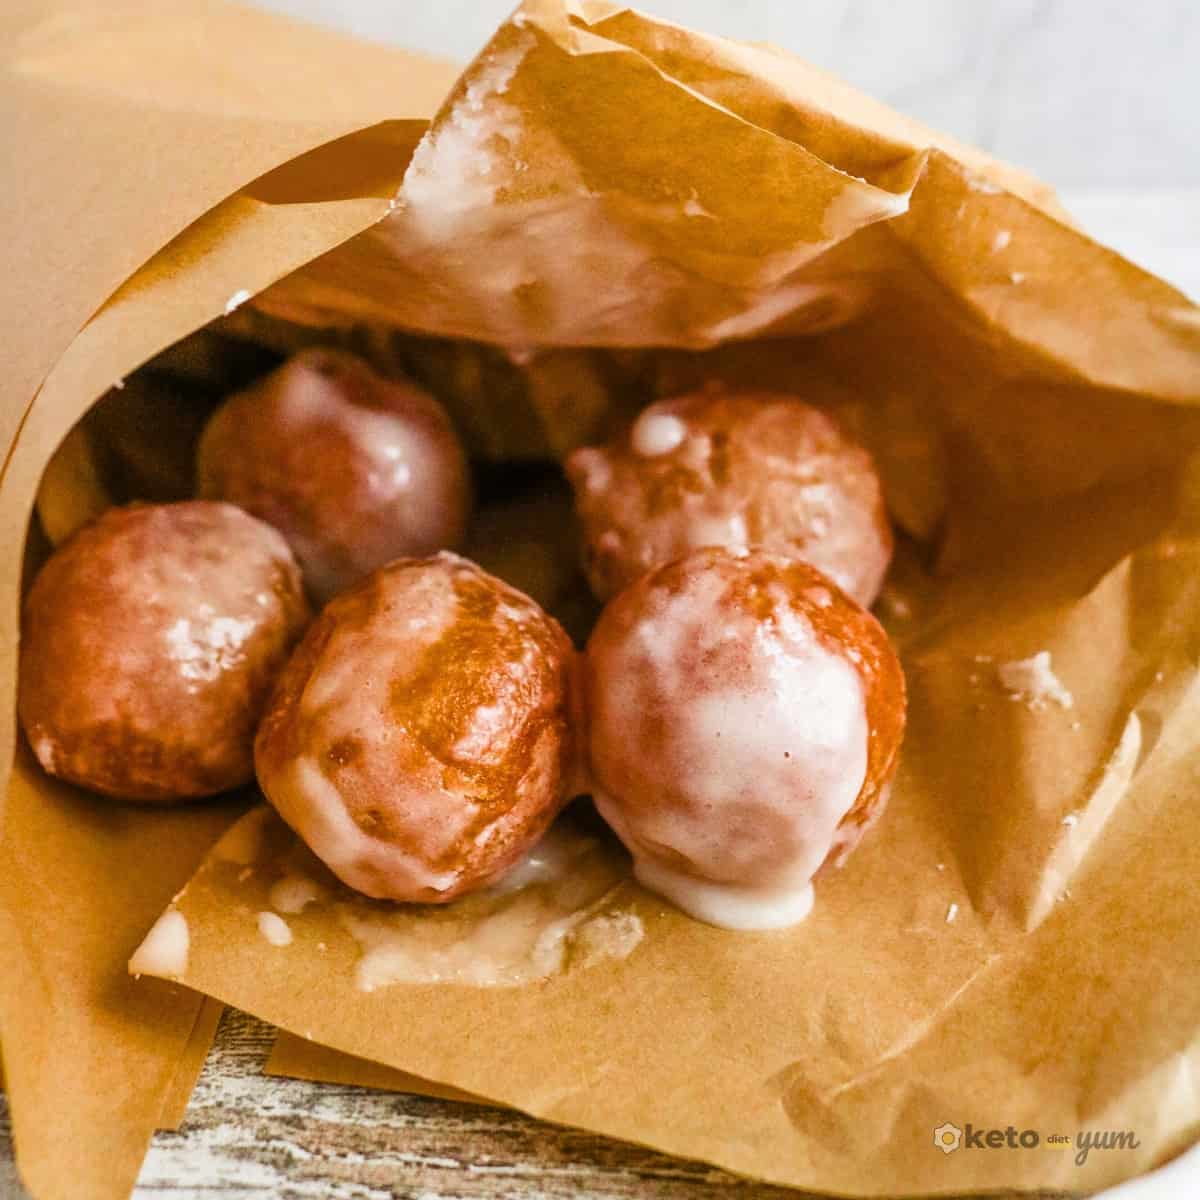 Keto Glazed Donut Balls